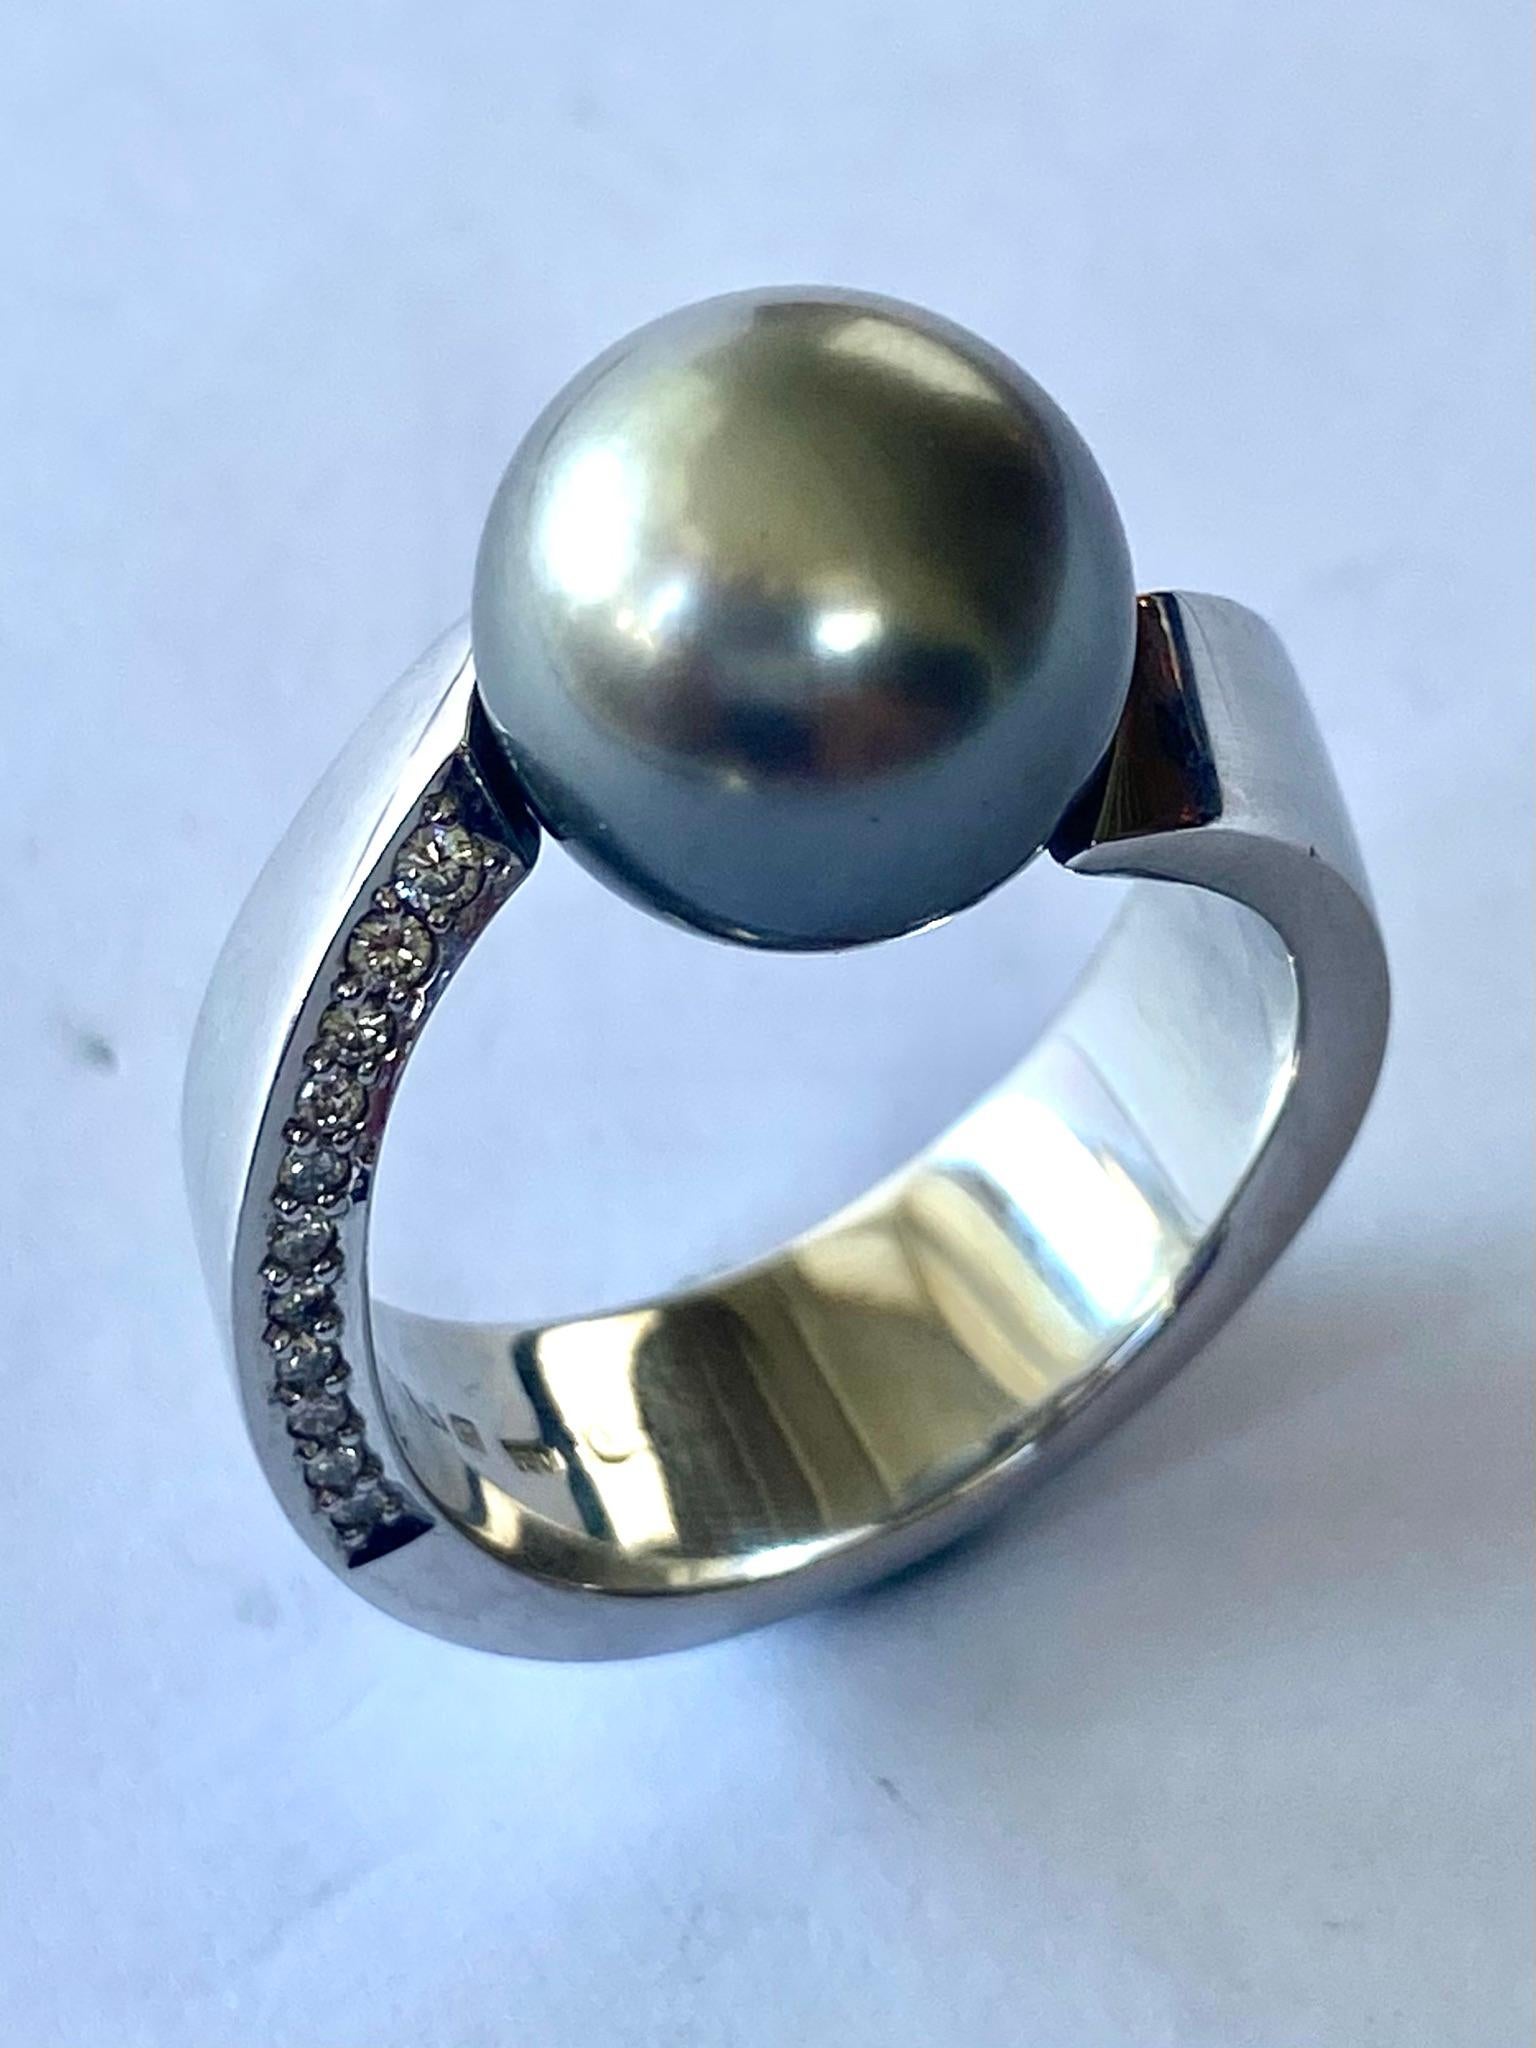 Ein (1) Ring aus 18 Karat Gold, gestempelt 750 und Cs = Schoeffel  Stuttgart Deutschland
Eine (1) sphäroidisch geschliffene Zentralperle (Typ Tahity) von  11.5 -12 mm   = 13,02 ct
Zweiundzwanzig (22) Diamanten im Roudn Briljnat-Schliff = 0,24 ct  VS